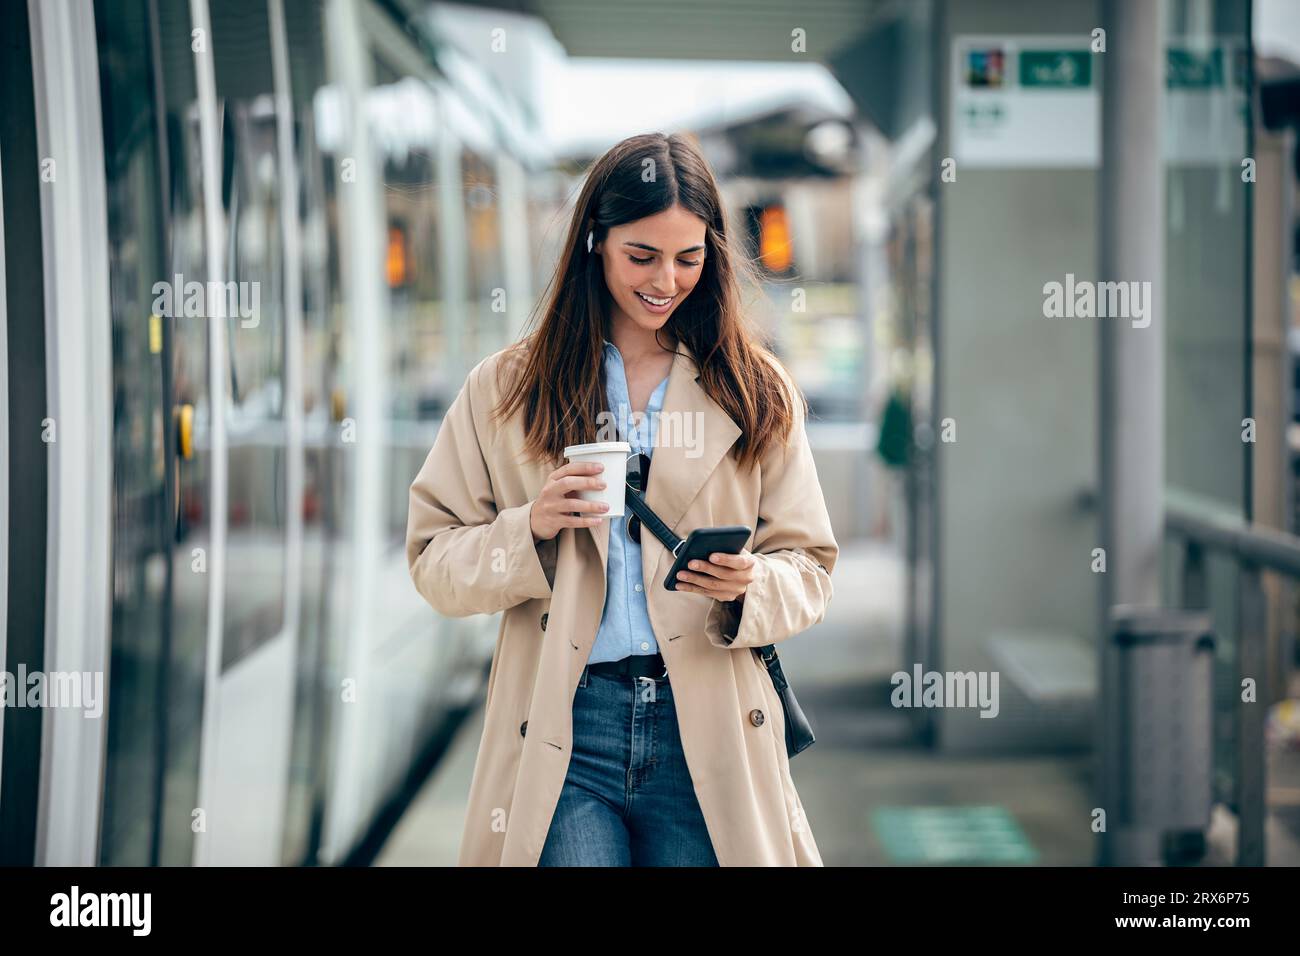 Femme heureuse marchant avec une tasse à café et en utilisant un téléphone intelligent à la station de tram Banque D'Images